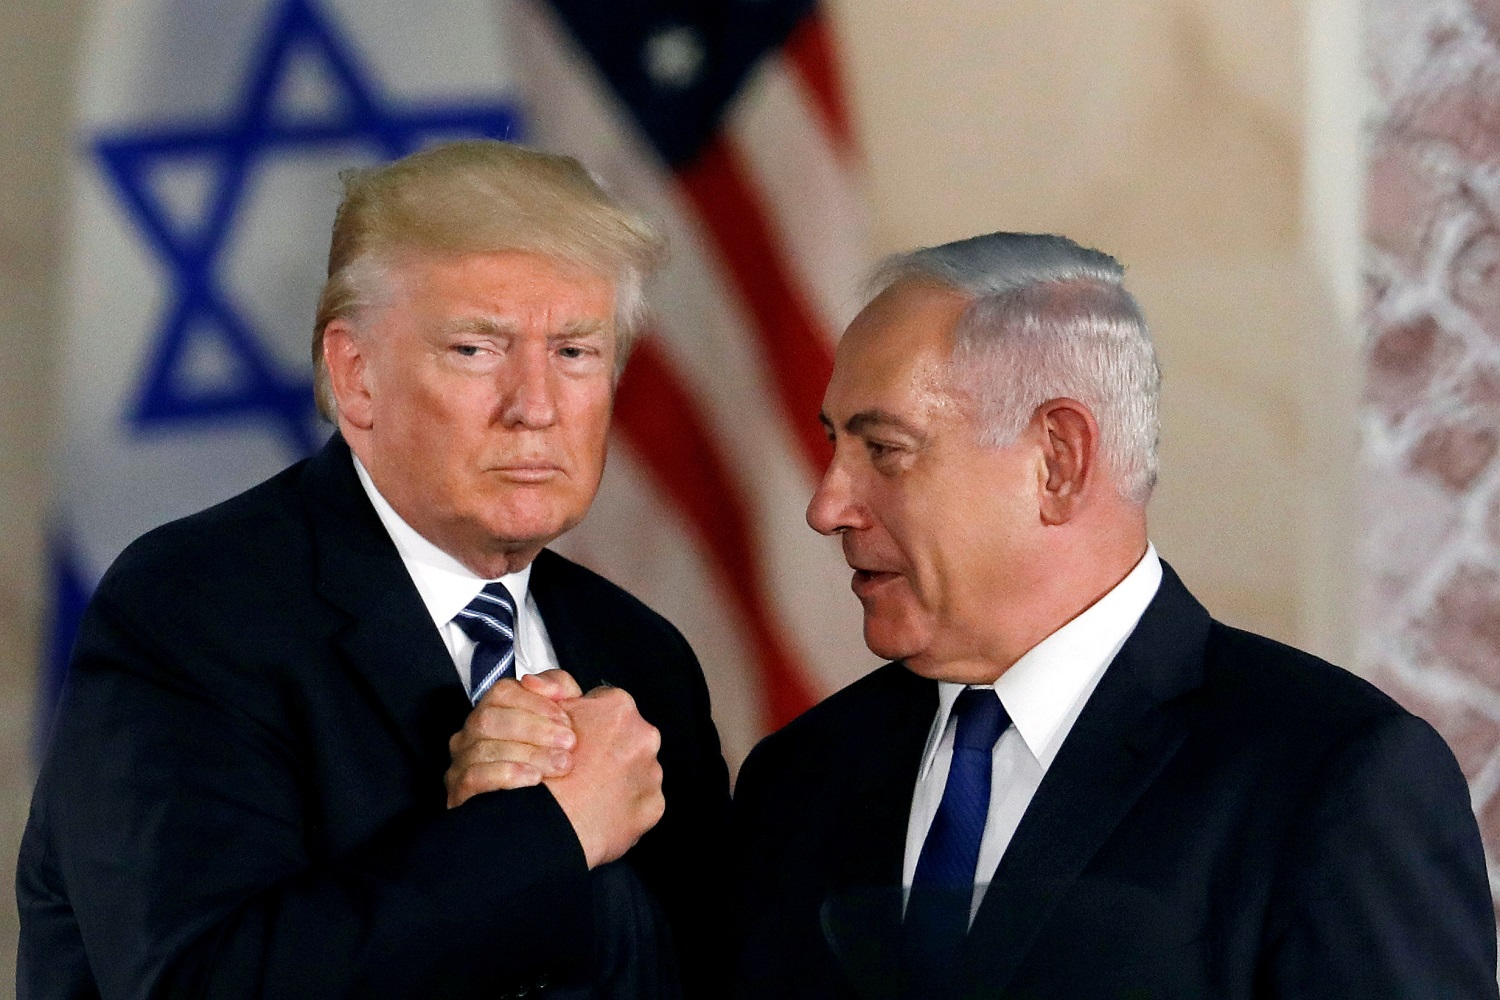 الرئيس الأميركي دونالد ترامب(يسار) ورئيس الوزراء الإسرائيلي بنيامين نتنياهو(يمين).23 مايو 2017. (رويترز) / رونين زفولون 